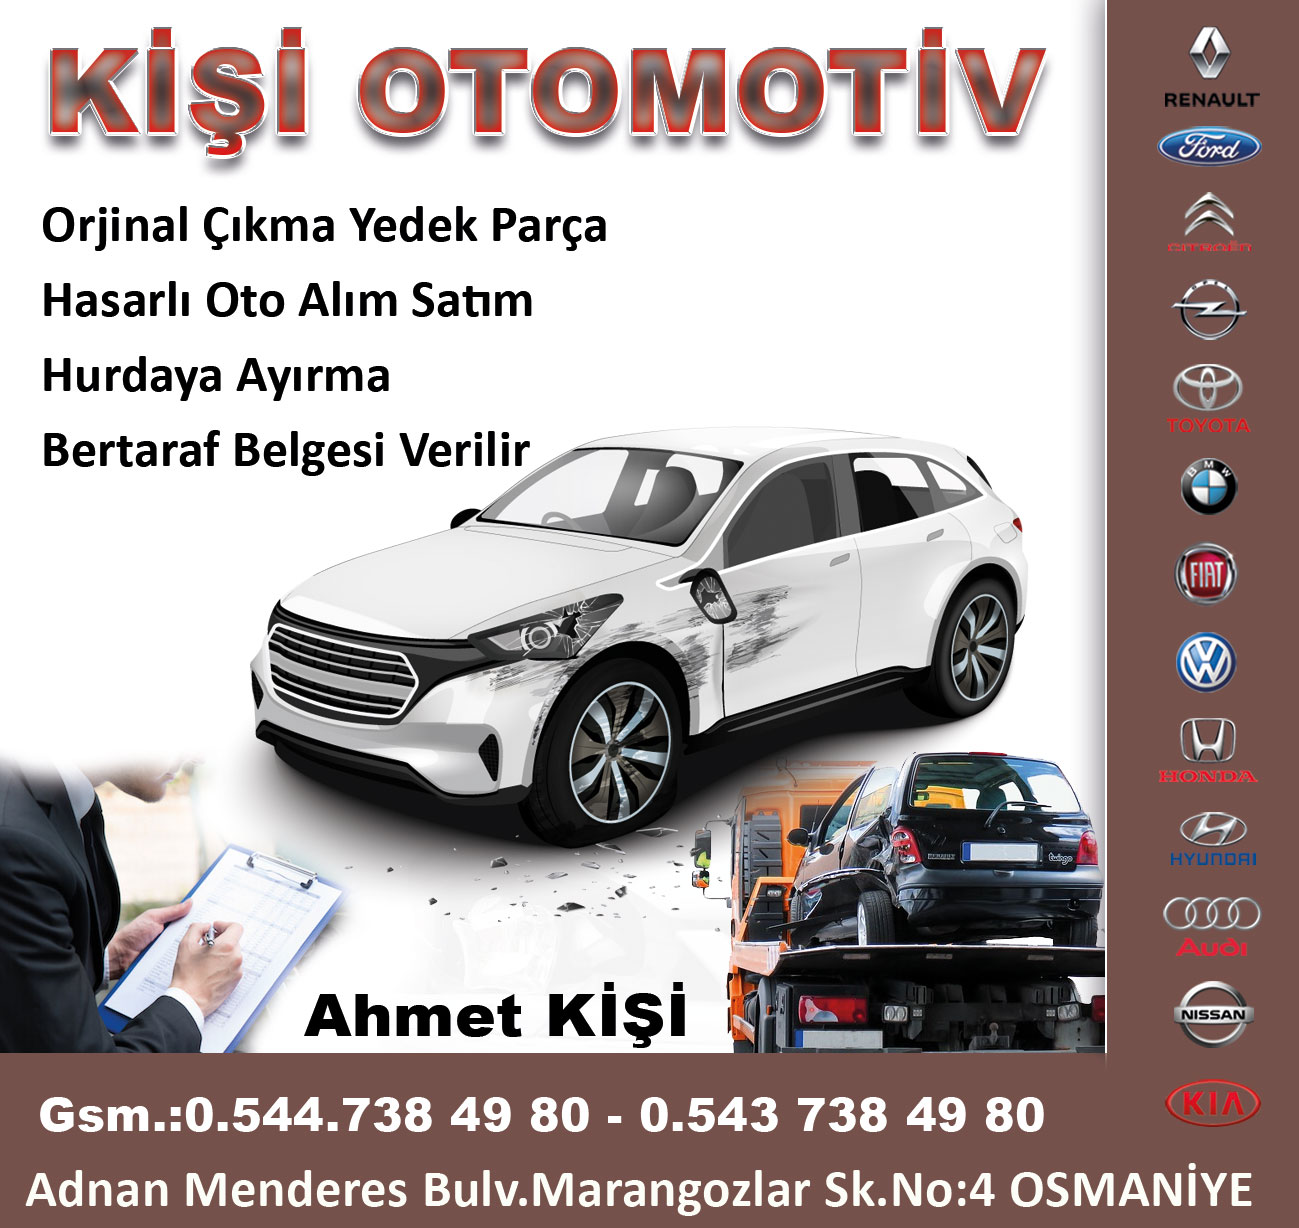 kisi-otomotiv-osmaniye